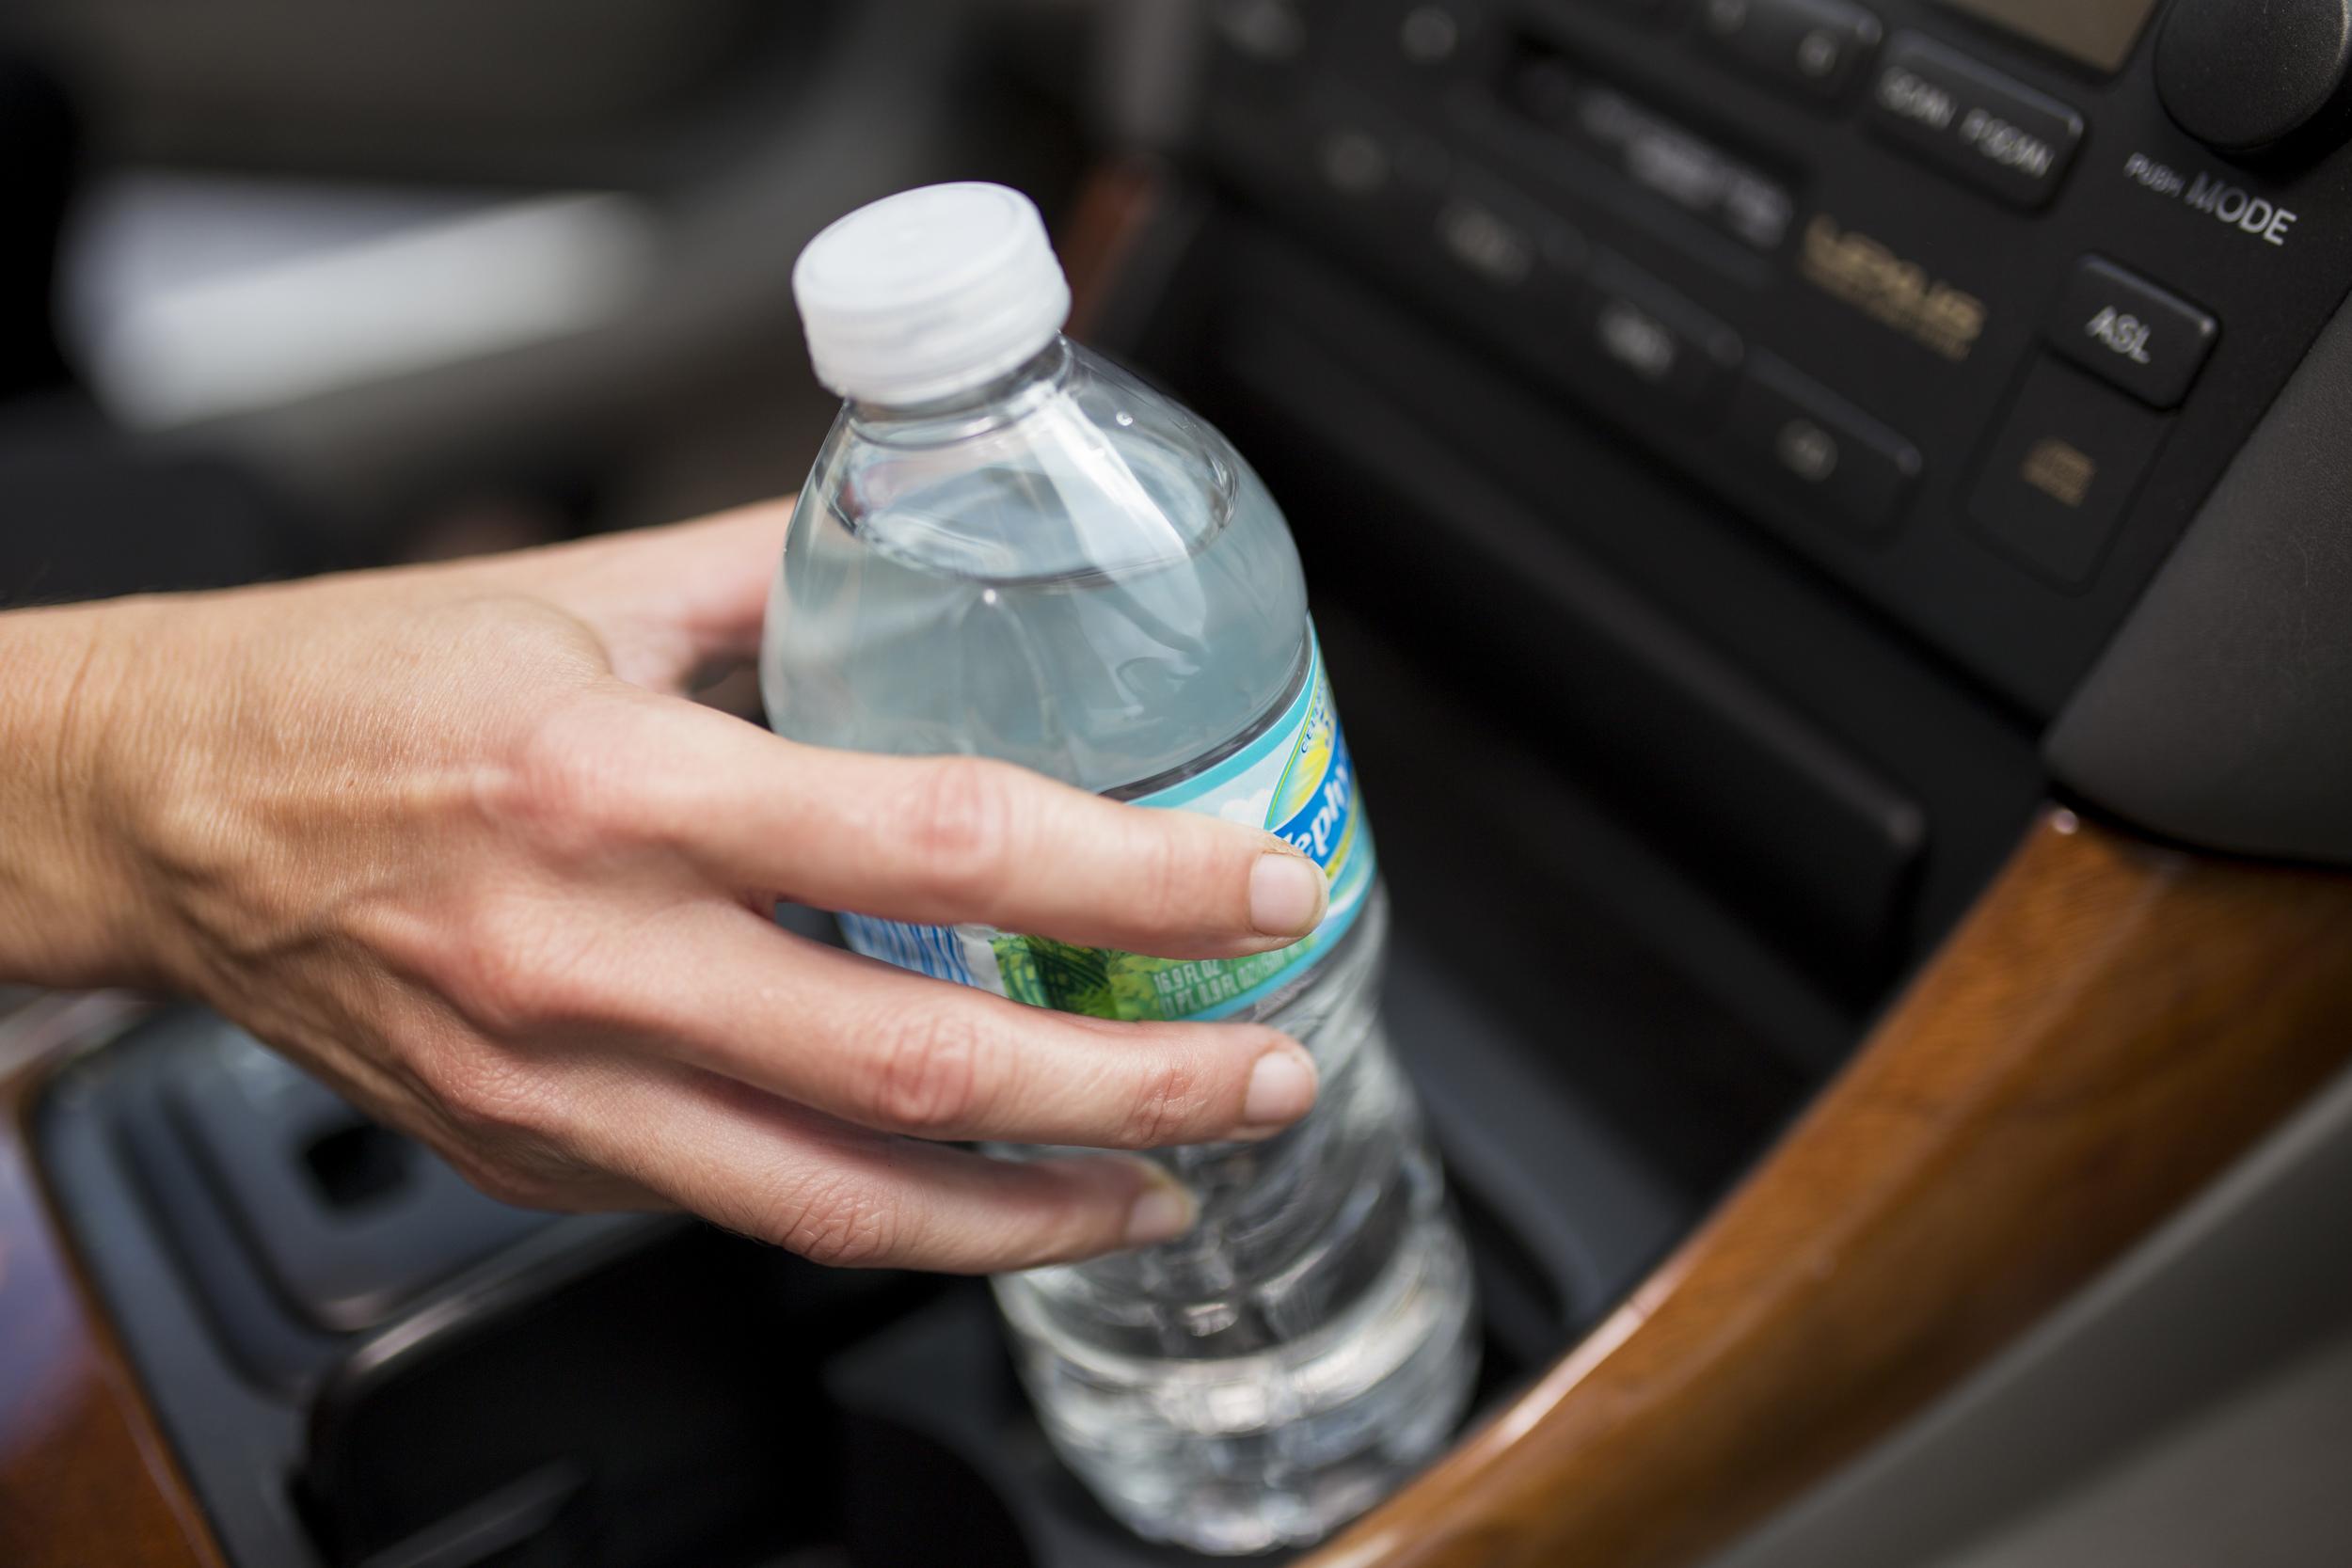 Προσοχή! Μην πίνετε νερό από τα ξεχασμένα μπουκάλια στο αυτοκίνητο